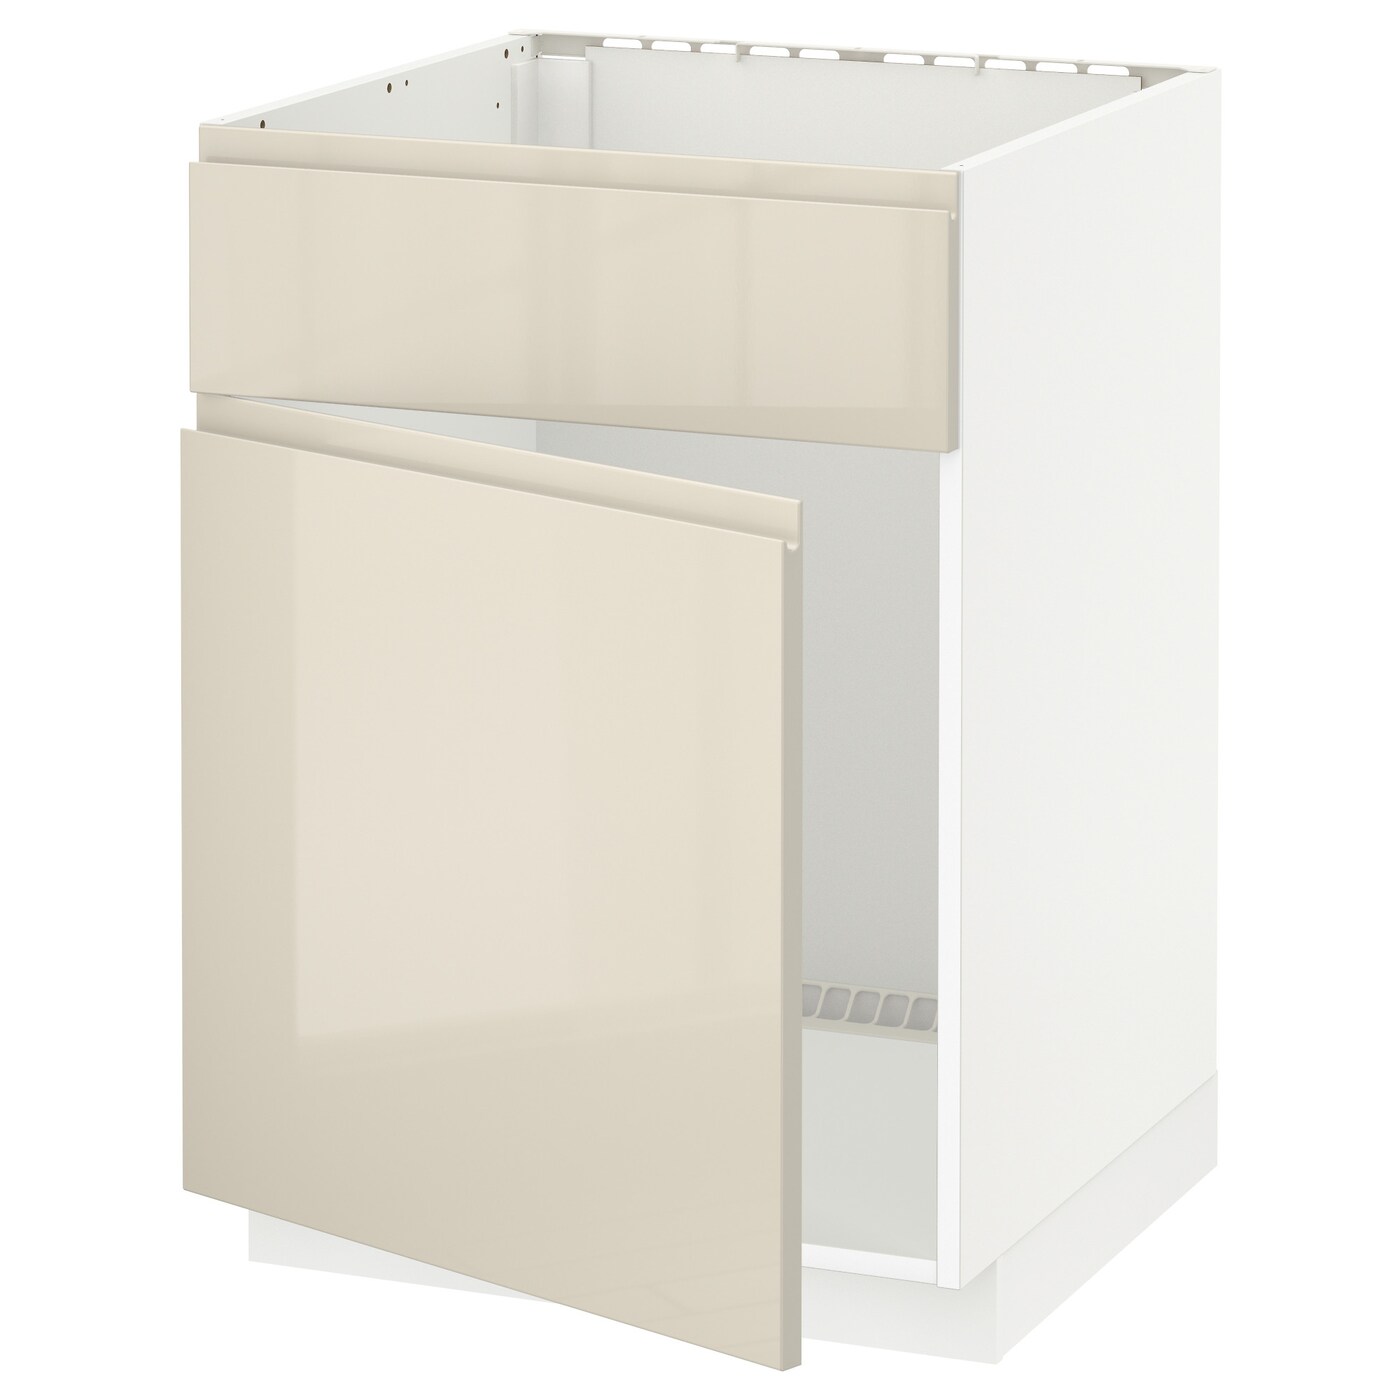 Напольный шкаф - METOD IKEA/ МЕТОД ИКЕА,  88х60 см, белый/светло-бежевый